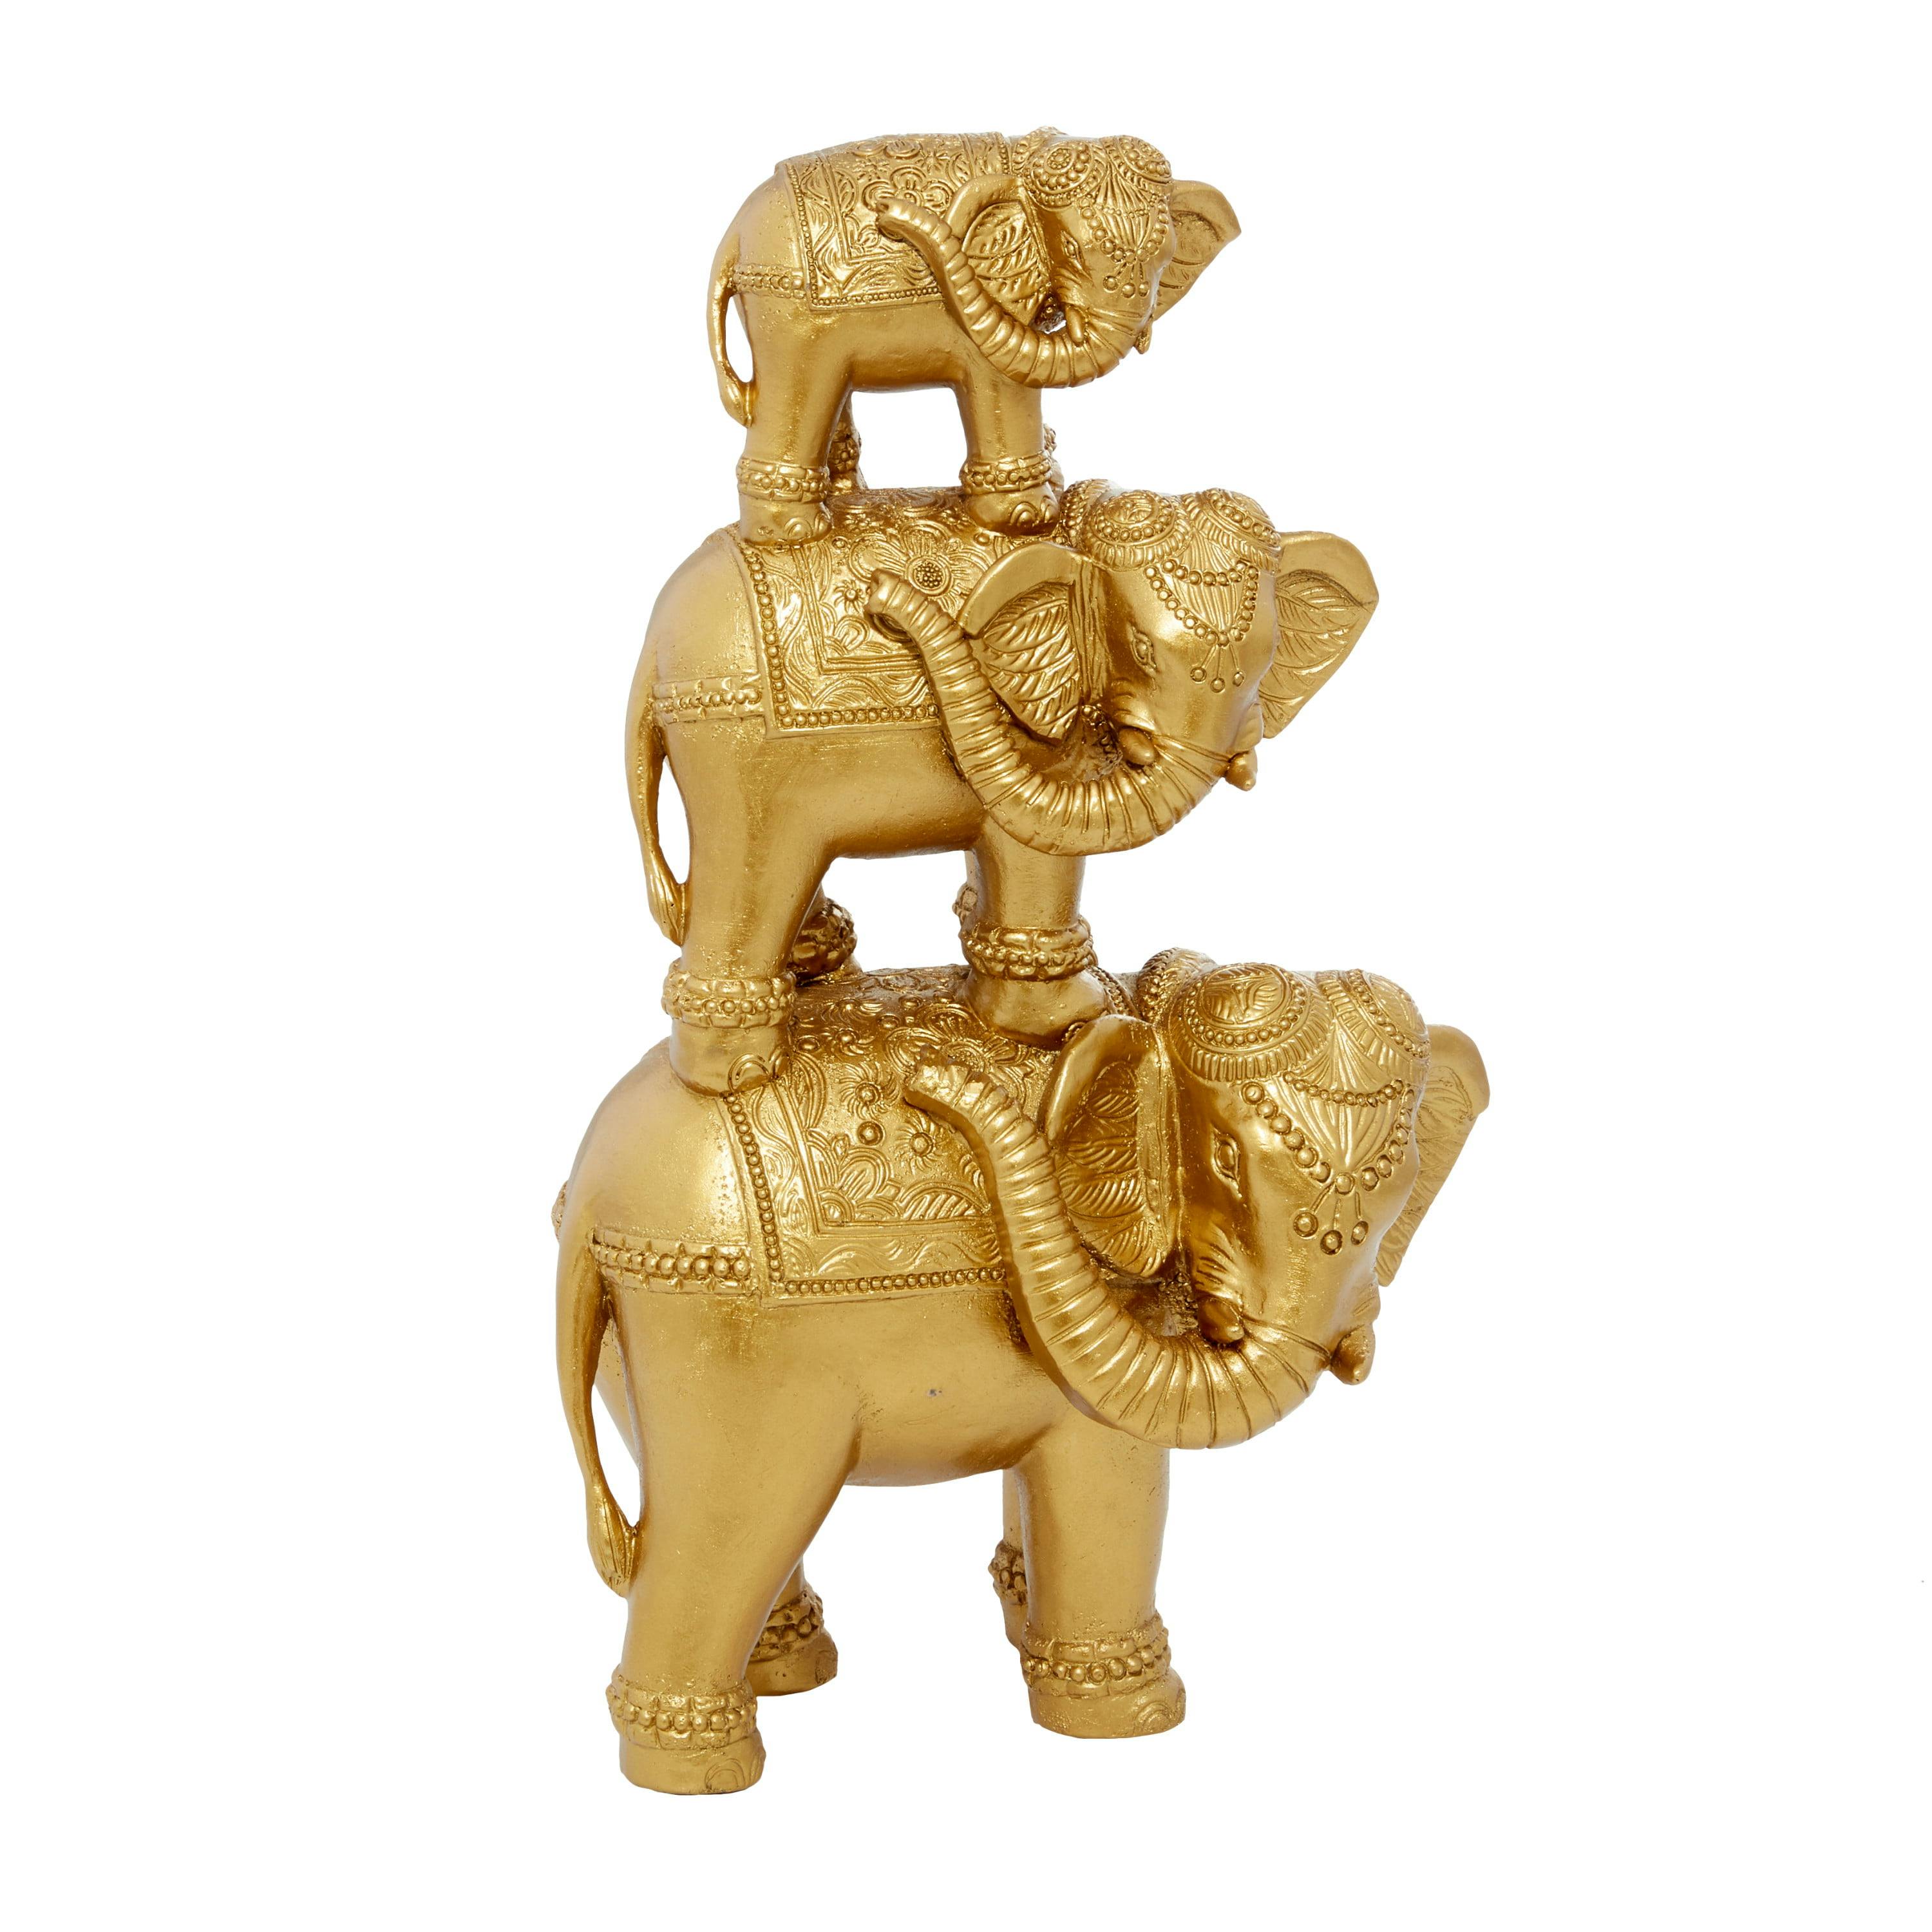 Elegant Gold Resin Elephant Sculpture 23" x 10" x 15"